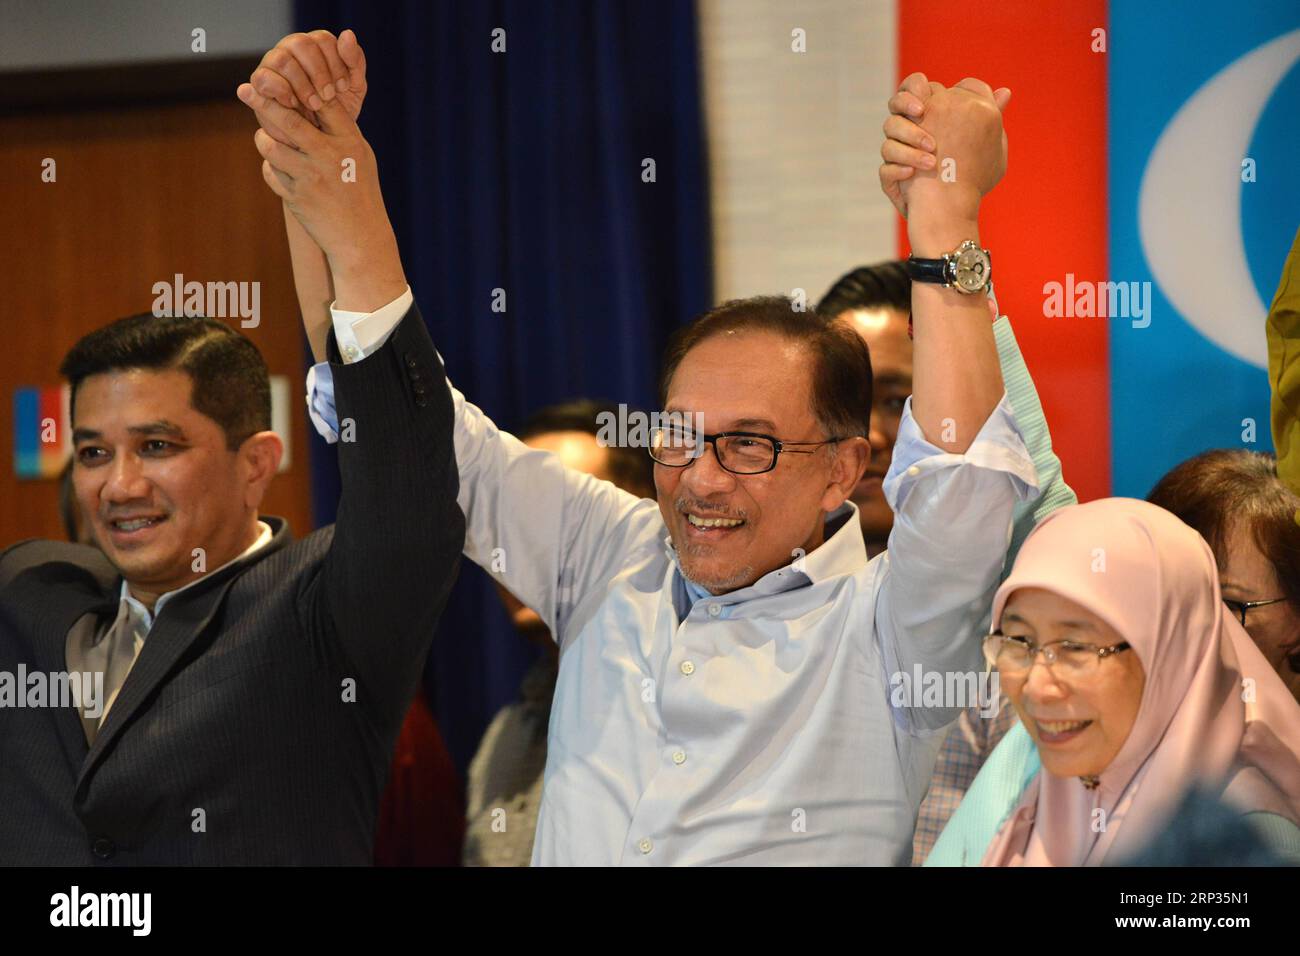 (180921) -- PETALING JAYA, 21. September 2018 -- malaysischer ehemaliger stellvertretender Premierminister Anwar Ibrahim (C) nimmt am 21. September 2018 an einer Pressekonferenz in Petaling Jaya bei Kuala Lumpur, Malaysia, Teil. Der ehemalige stellvertretende Premierminister Anwar Ibrahim wurde am Freitag zum Kandidaten für eine Nachwahl für einen Parlamentssitz erklärt. (Zhf) MALAYSIA-PETALING JAYA-ANWAR IBRAHIM-KANDIDAT ChongxVoonxChung PUBLICATIONxNOTxINxCHN Stockfoto